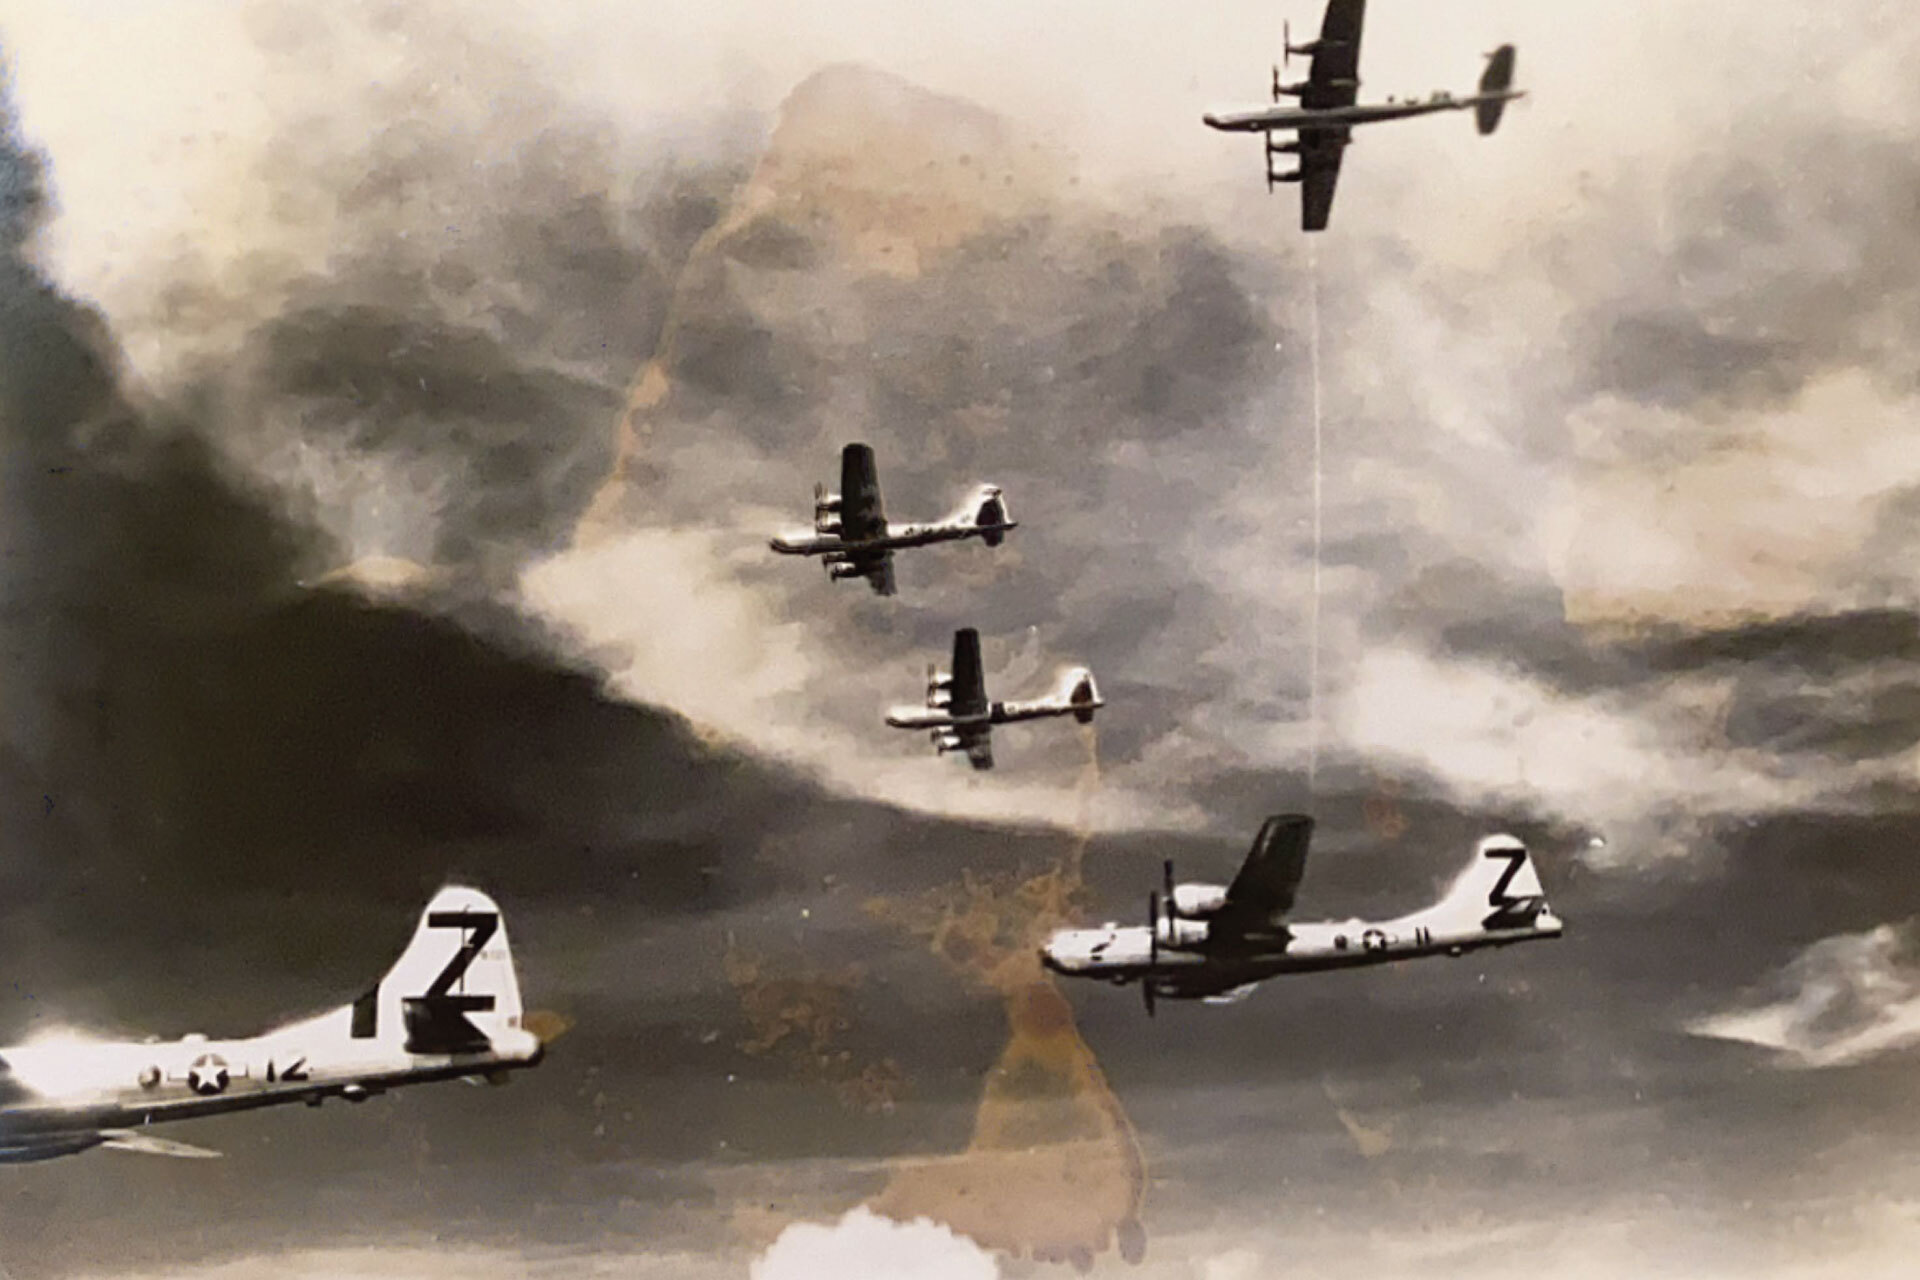 ภาพสแกนที่เสื่อมสภาพลงแสดงให้เห็นเครื่องบินสมัยสงครามโลกครั้งที่ 2 ที่กำลังบินอยู่